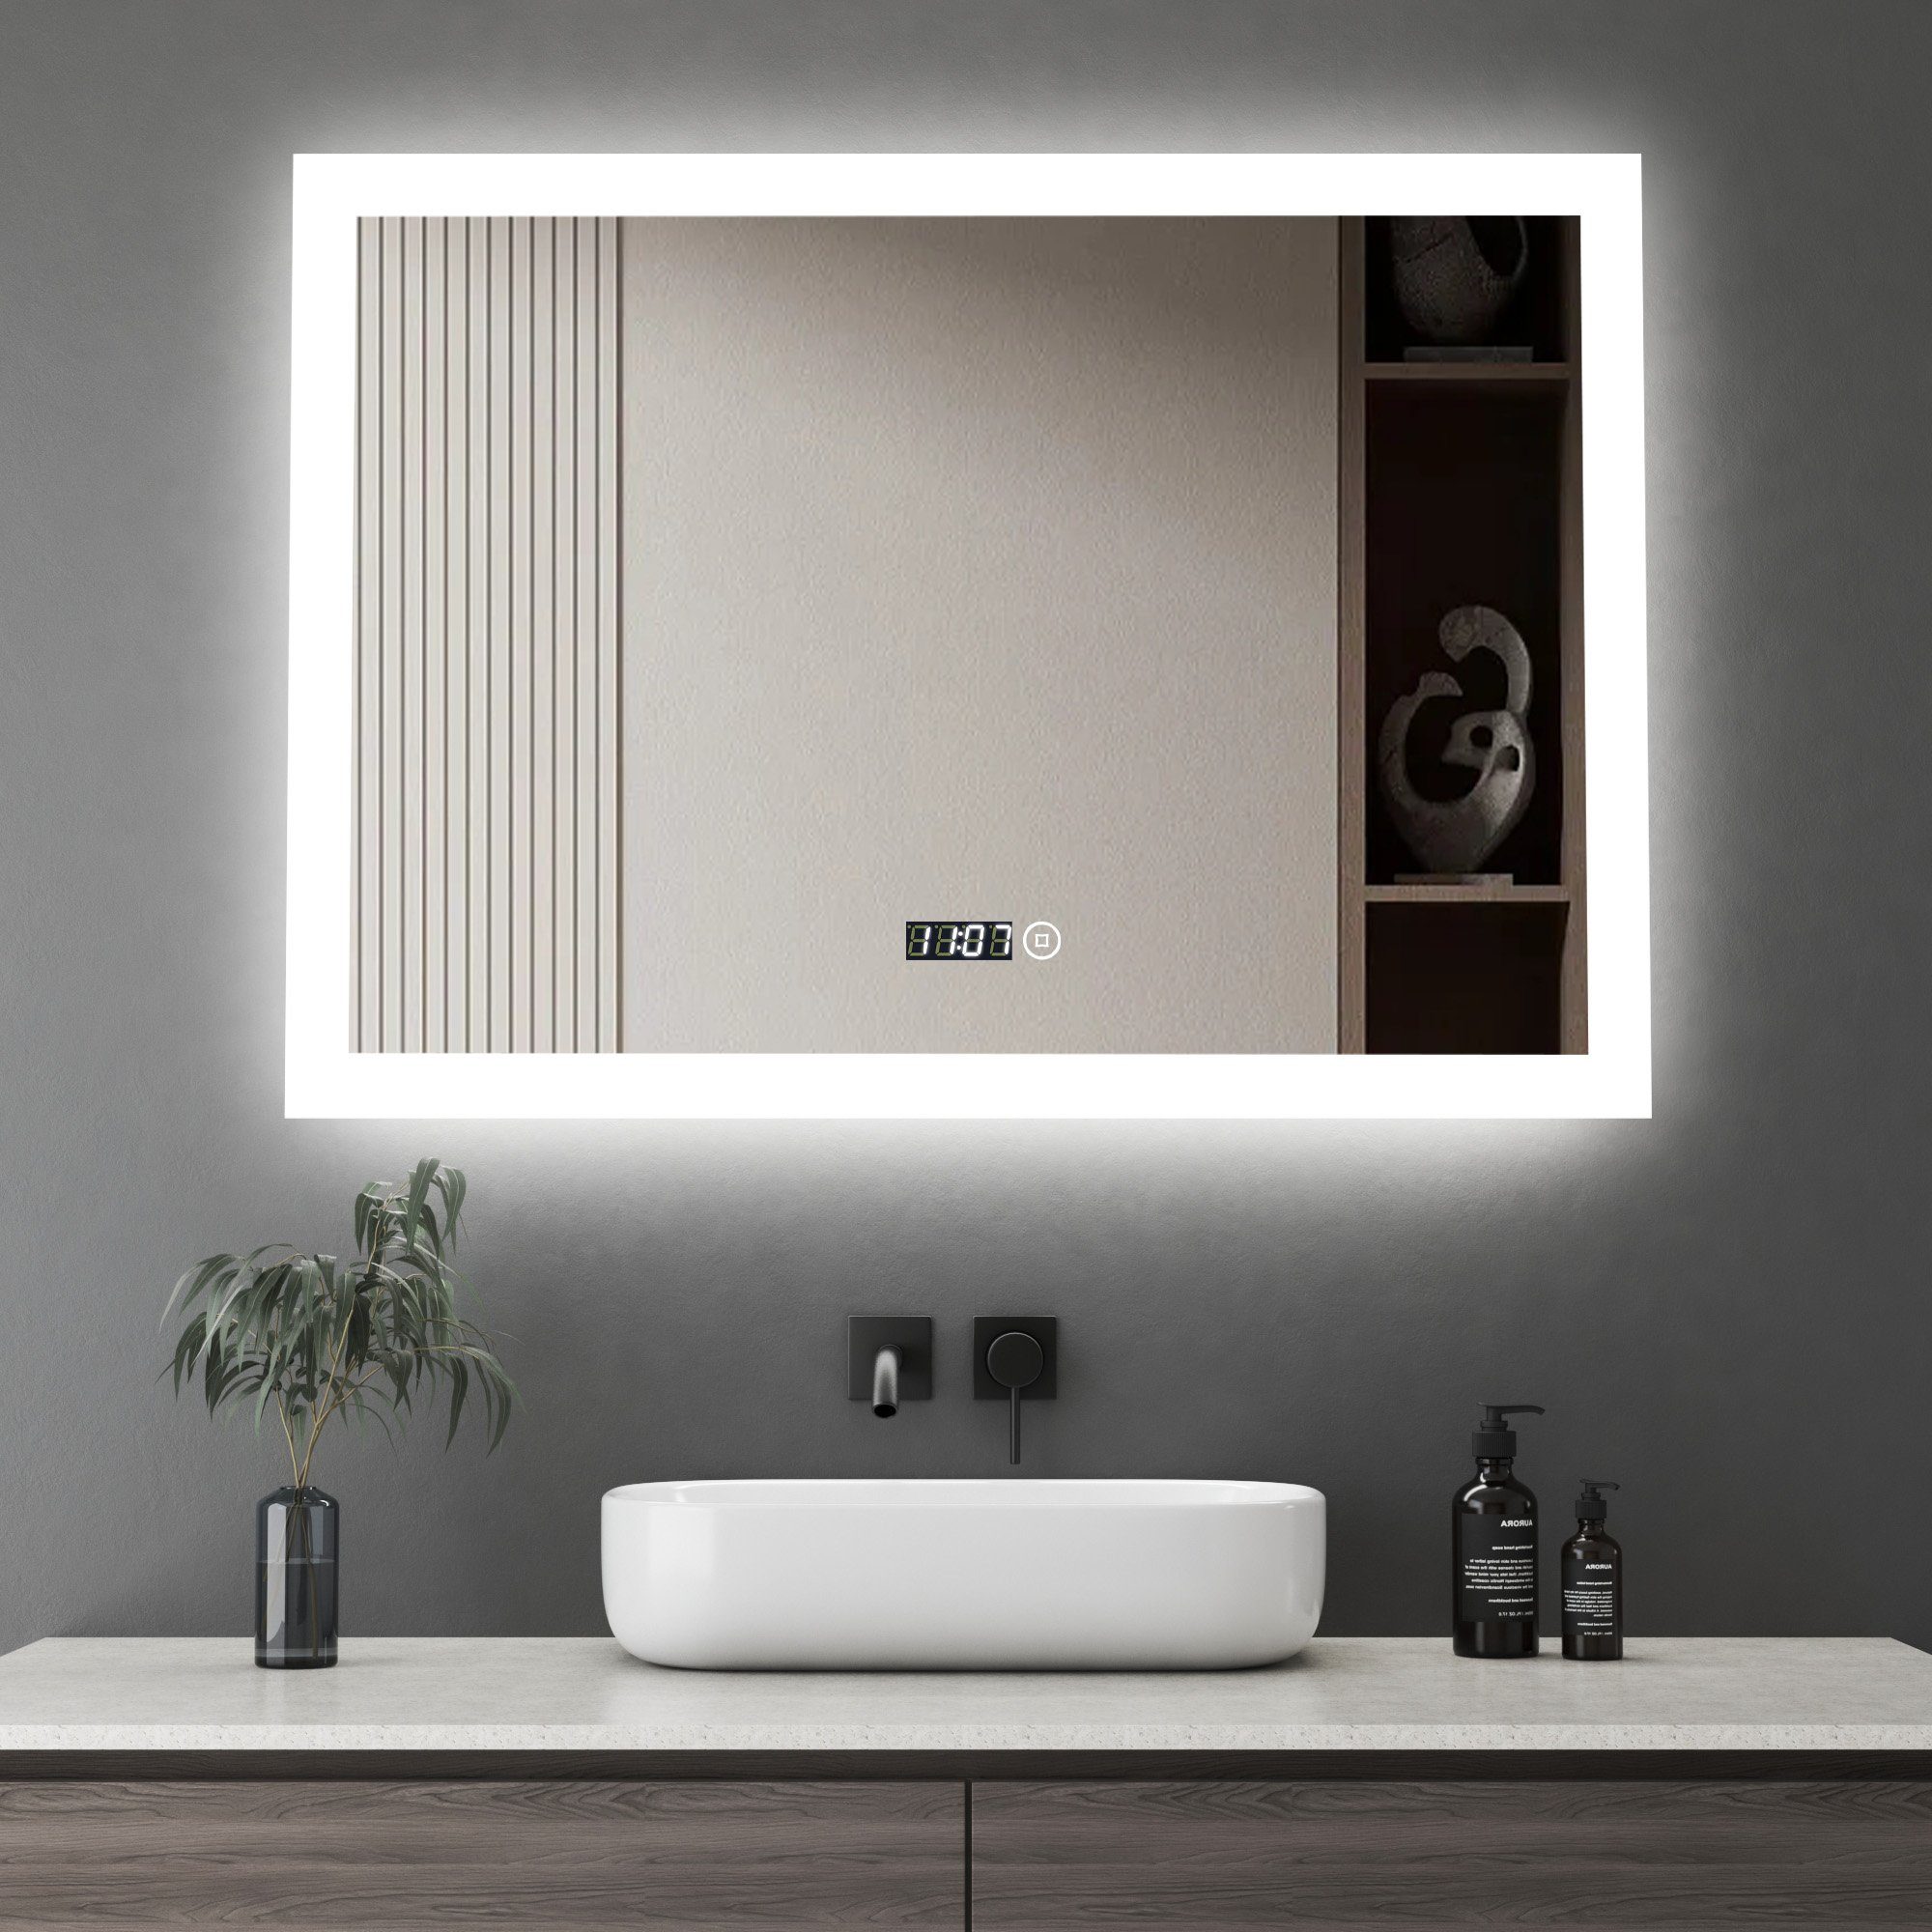 WDWRITTI Wandspiegel Led Badspiegel 80x60 mit Uhr 3Lichtfarben Dimmbar Speicherfunktion (Spiegel mit beleuchtung, Kalt/Neutral/Warmweiß), Touch, Wandschalter, Energiesparend